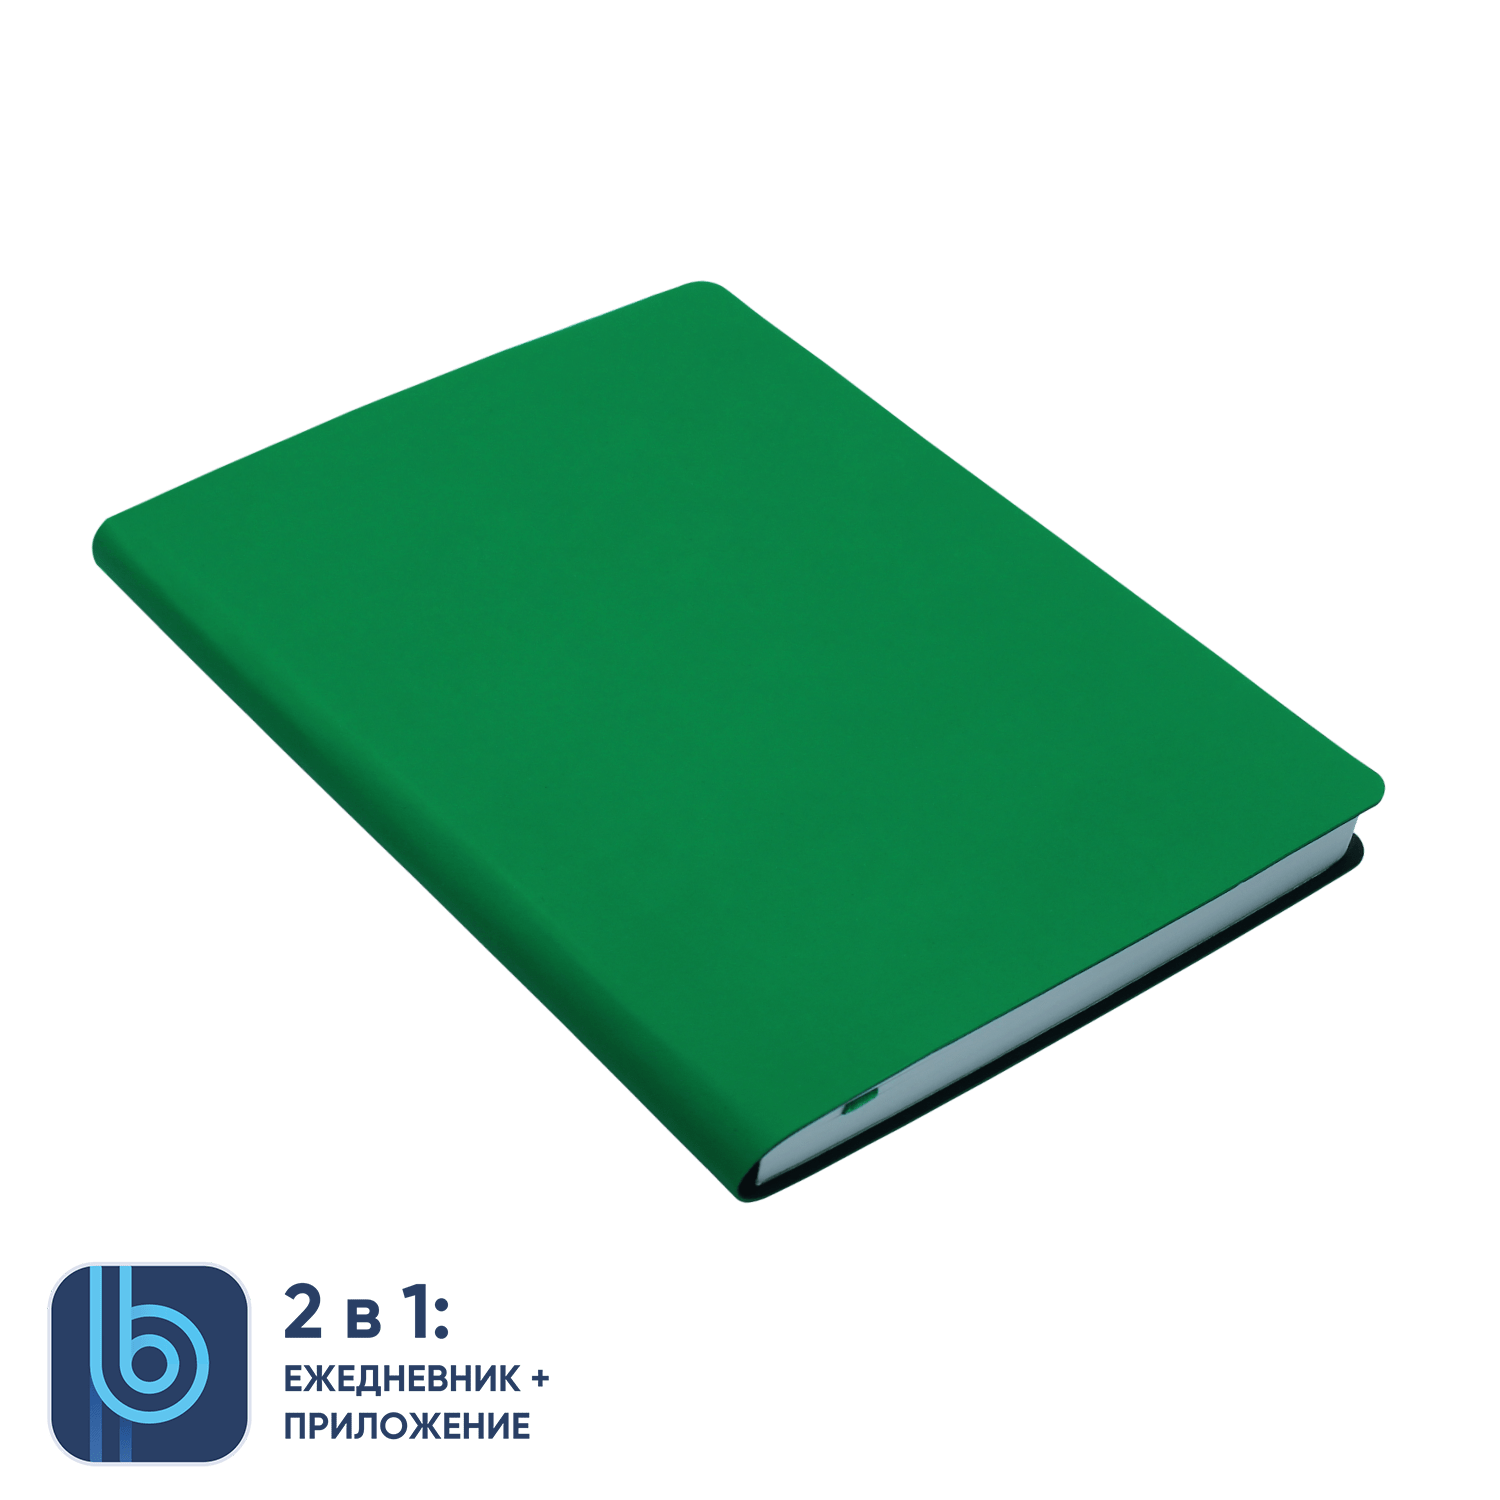 Ежедневник Bplanner.01 green (зеленый), зеленый, картон